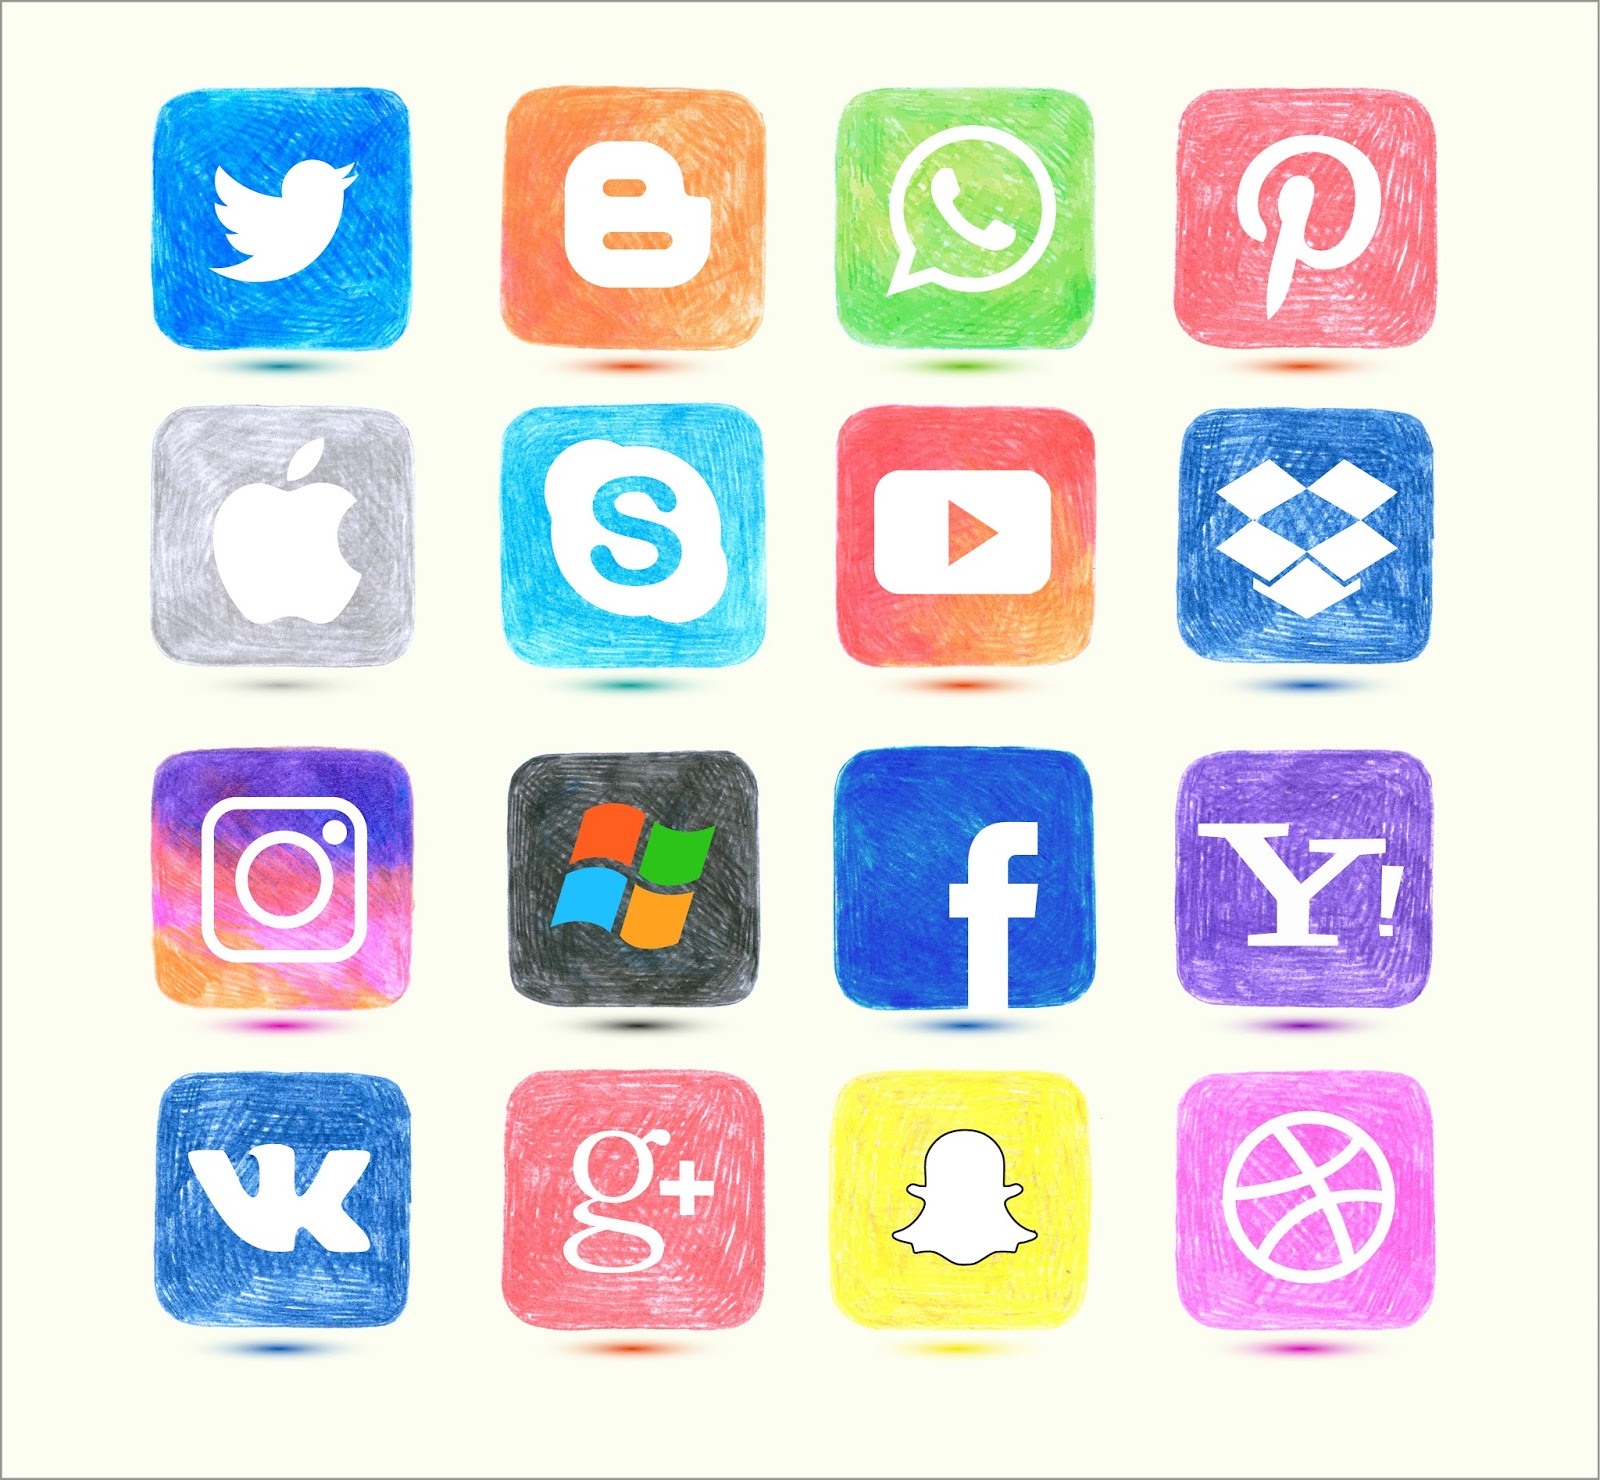 Цвета социальных сетей. Красивые иконки для приложений. Значки соцсетей. Иконки соц сетей. Логотипы соцсетей.